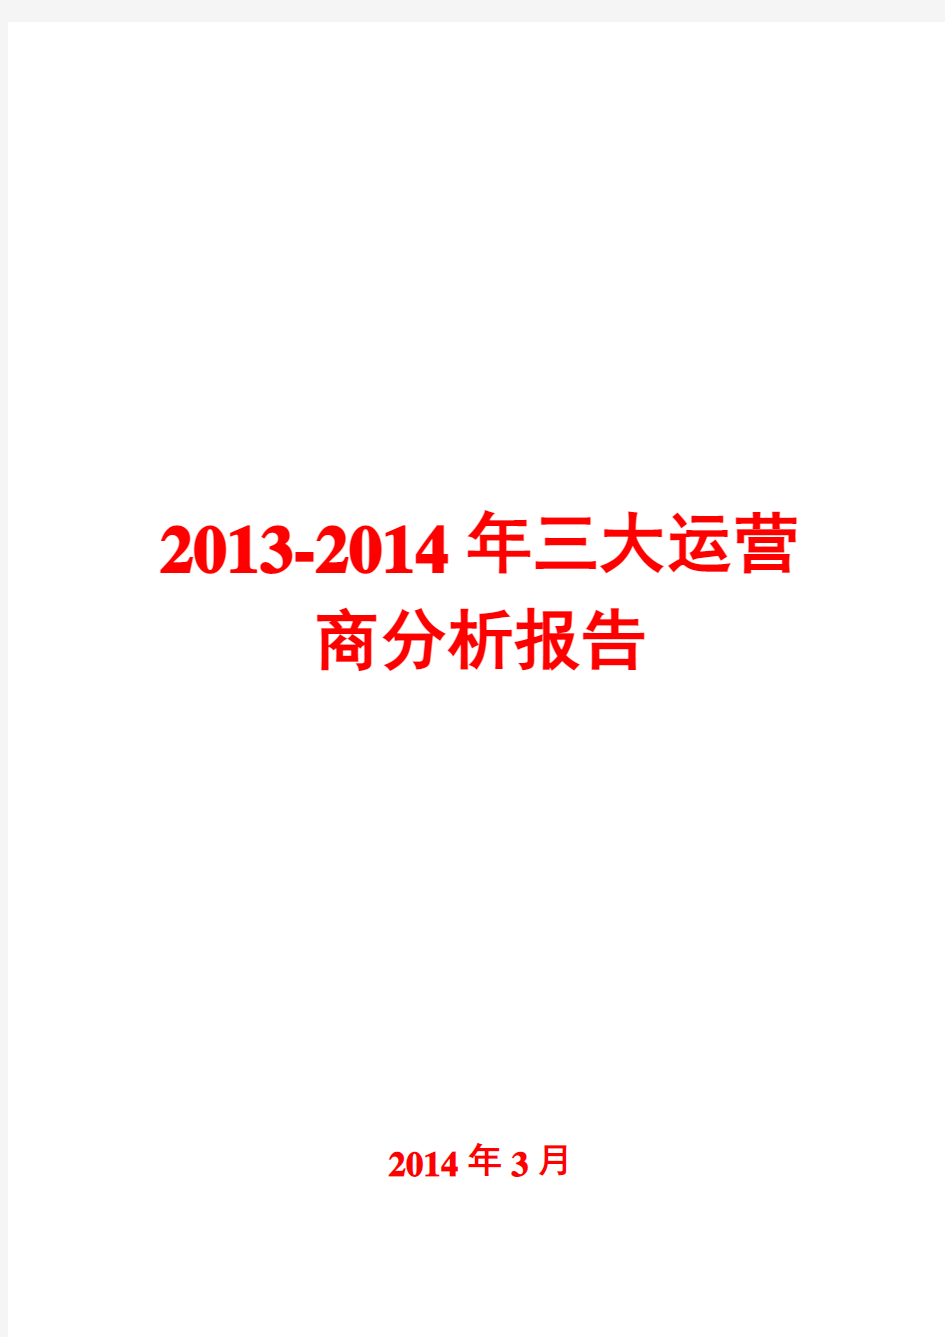 2013-2014年三大运营商分析报告